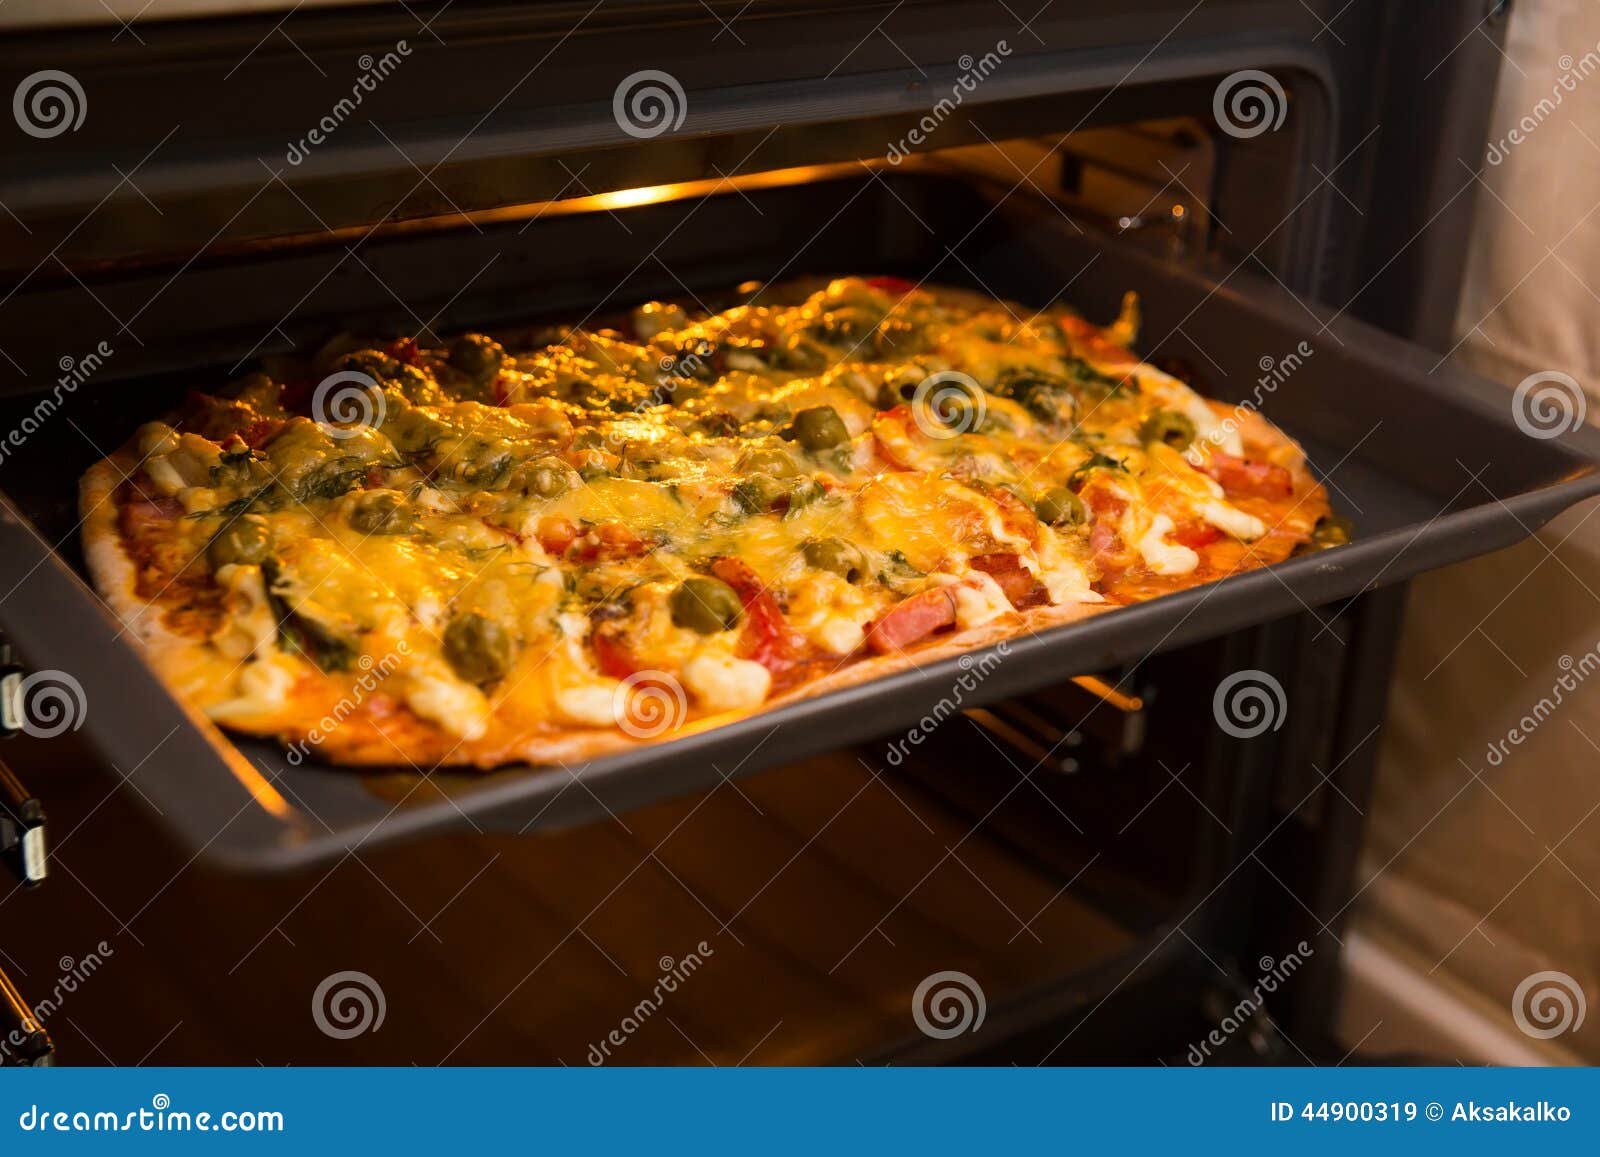 что сделать чтобы пицца не пригорала в духовке фото 18